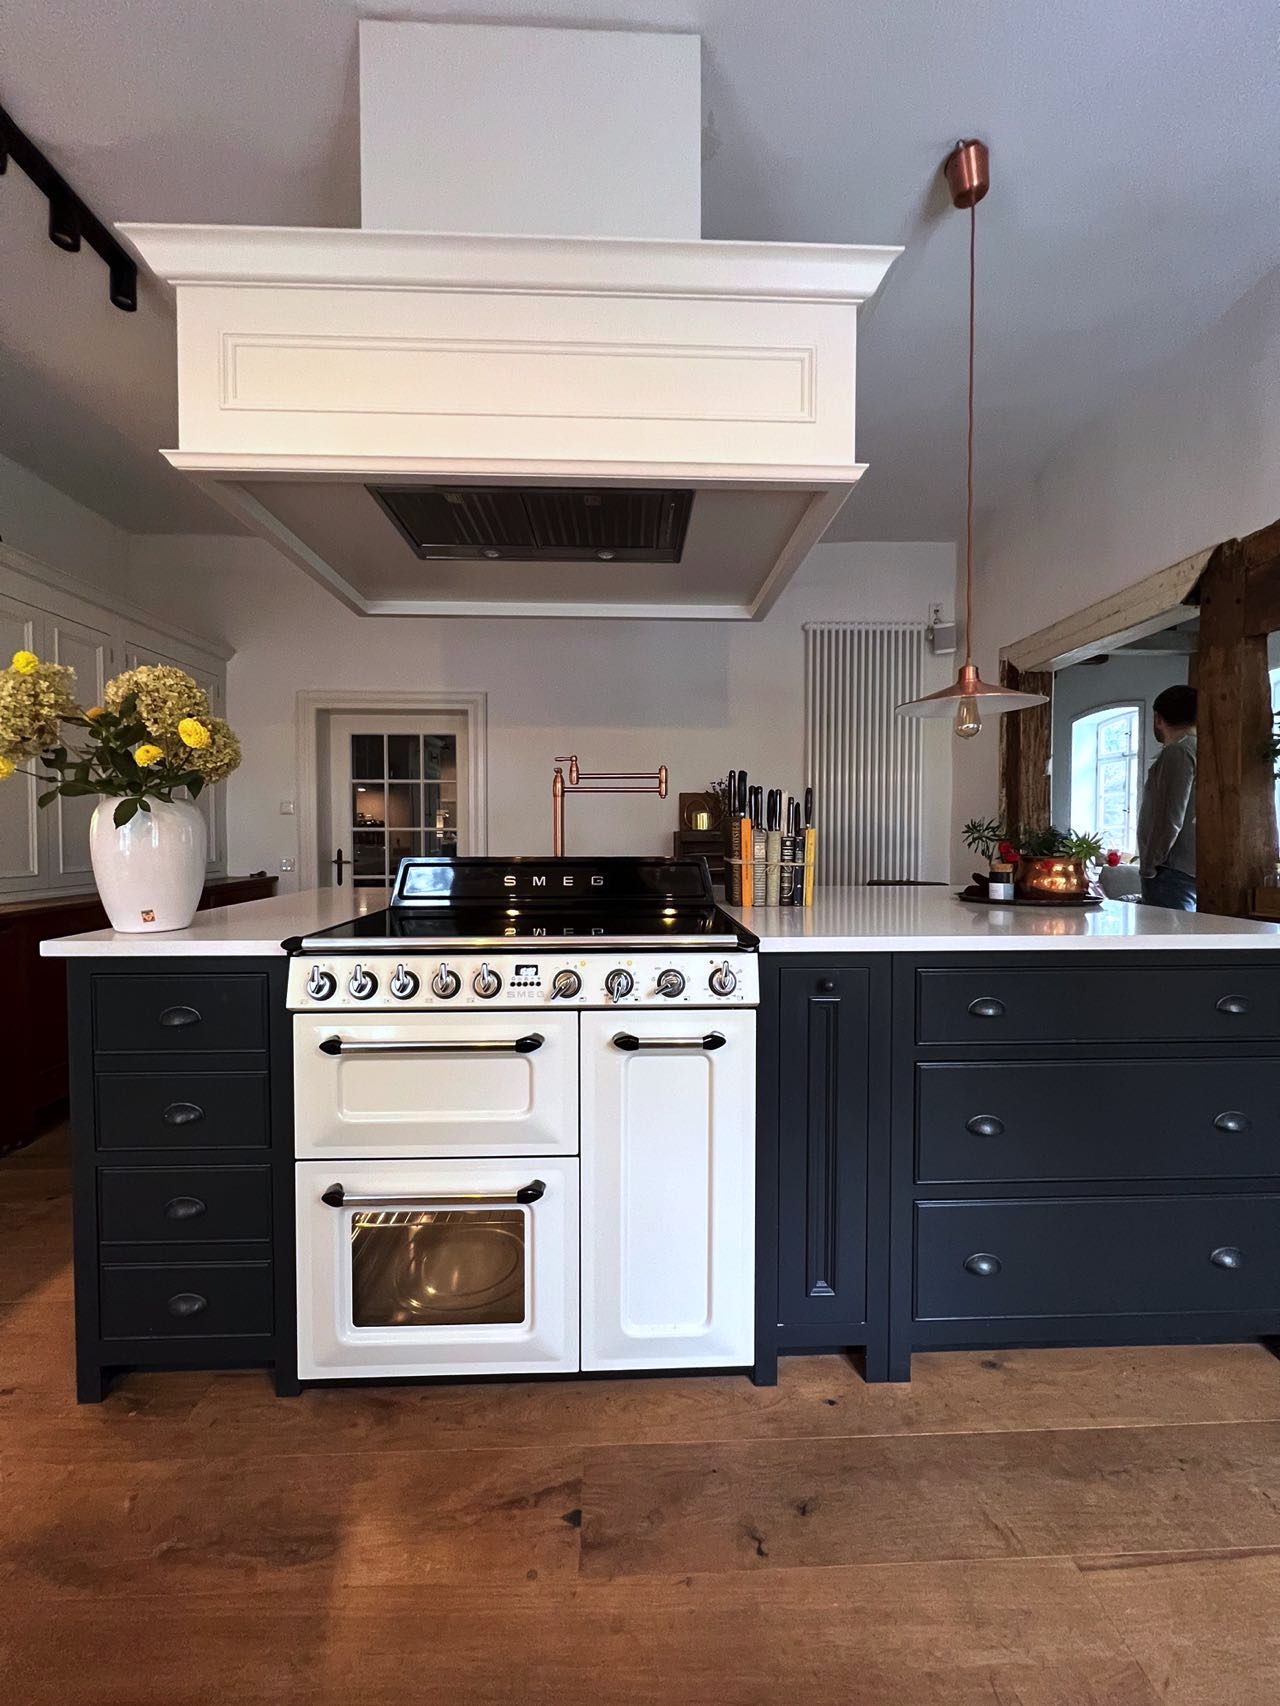 Im Zentrum der Küche beeindruckt die Kücheninsel mit einem stilvollen, weißen SMEG-Rangecooker und einer ungewöhnlichen Dunstabzugshaube, die für ein offenes Raumgefühl sorgt.